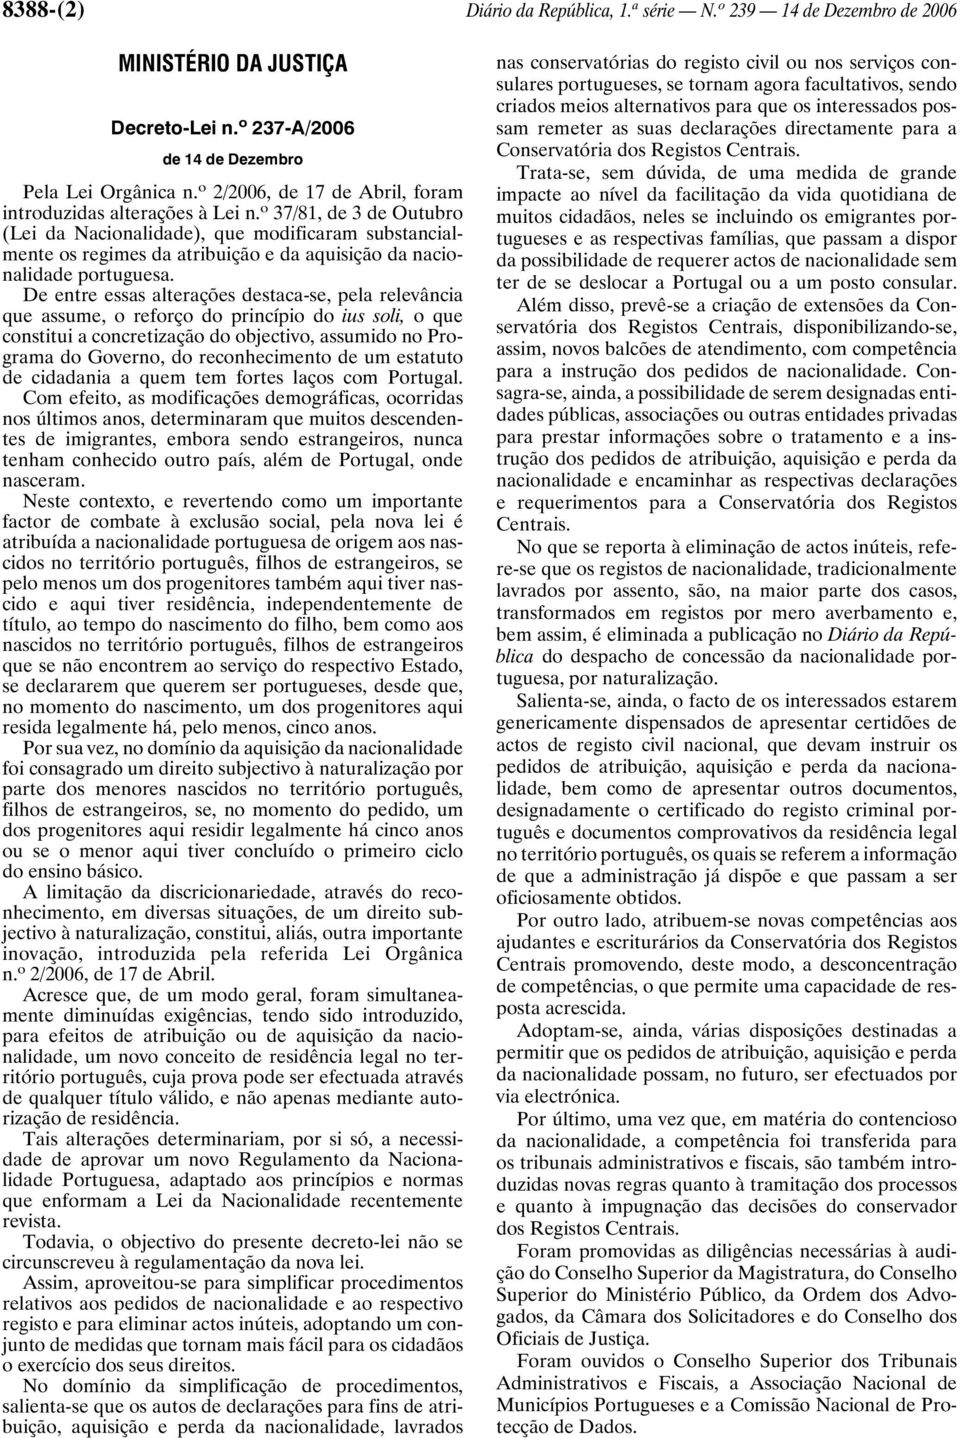 o 37/81, de 3 de Outubro (Lei da Nacionalidade), que modificaram substancialmente os regimes da atribuição e da aquisição da nacionalidade portuguesa.